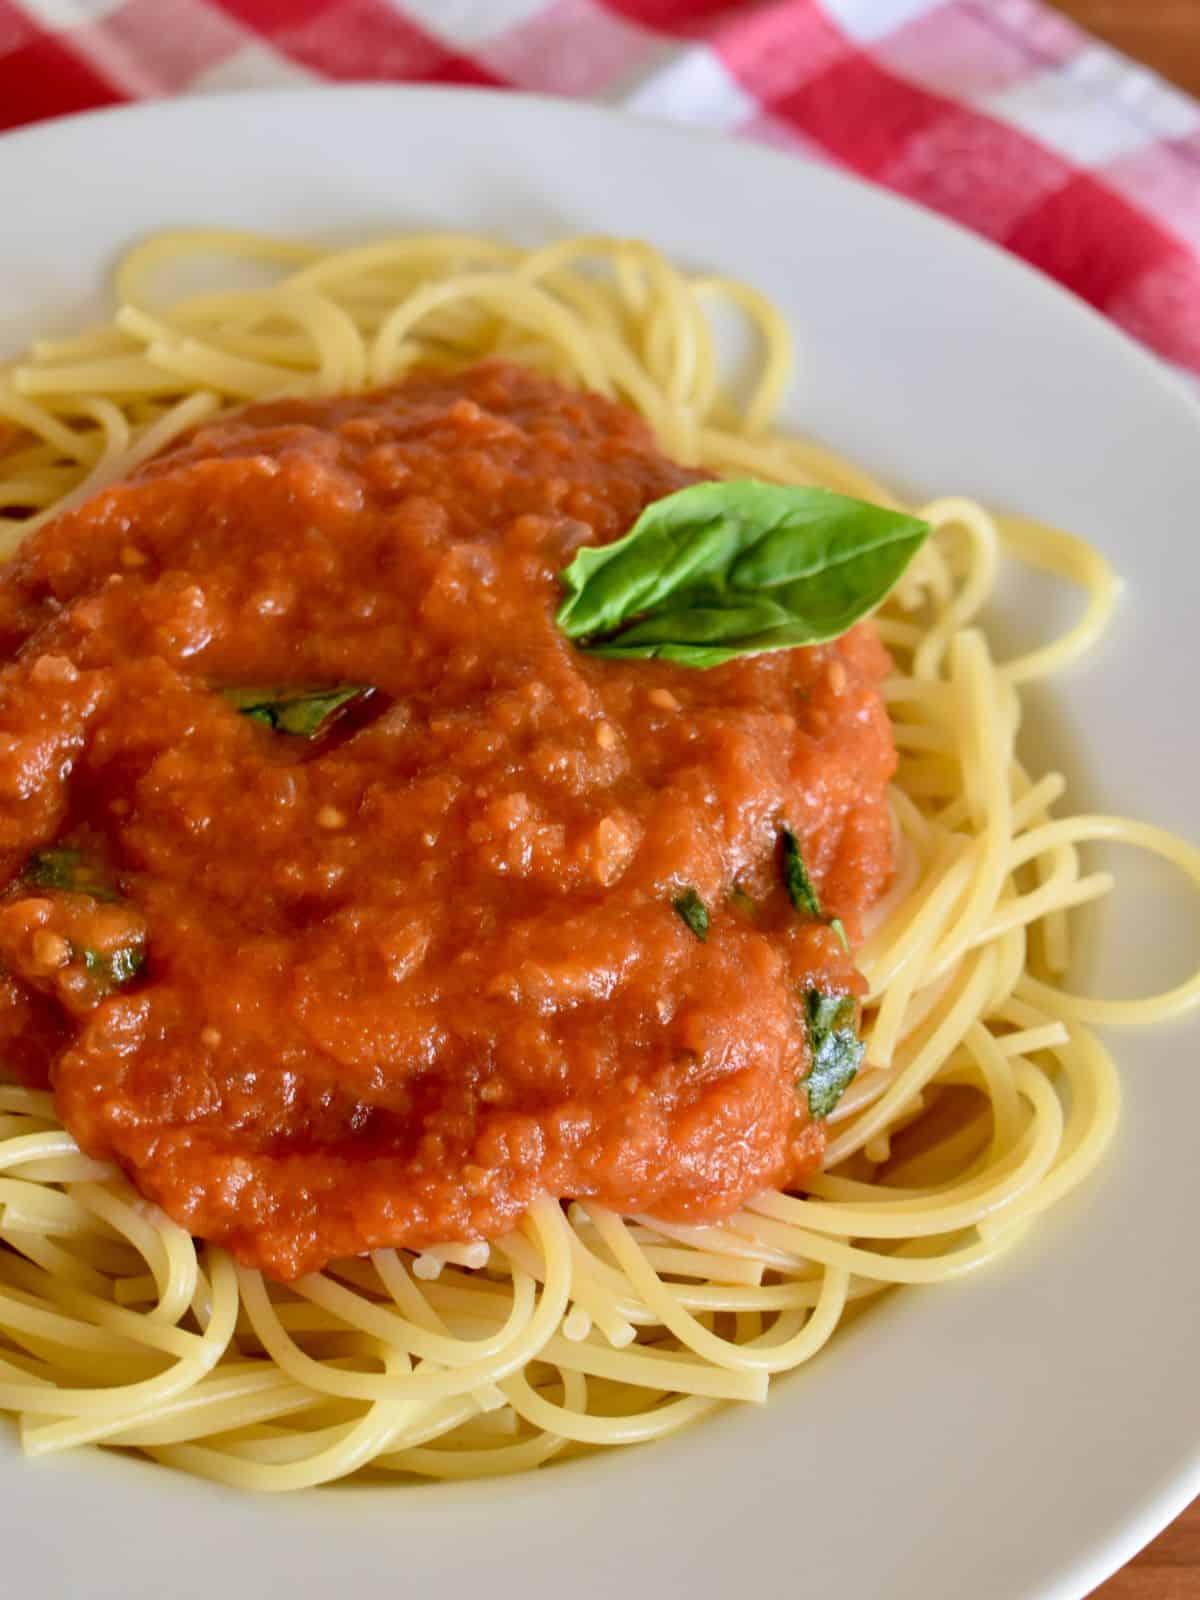 Sugo di pomodoro on spaghetti in a white bowl with a checkered napkin in the background. 